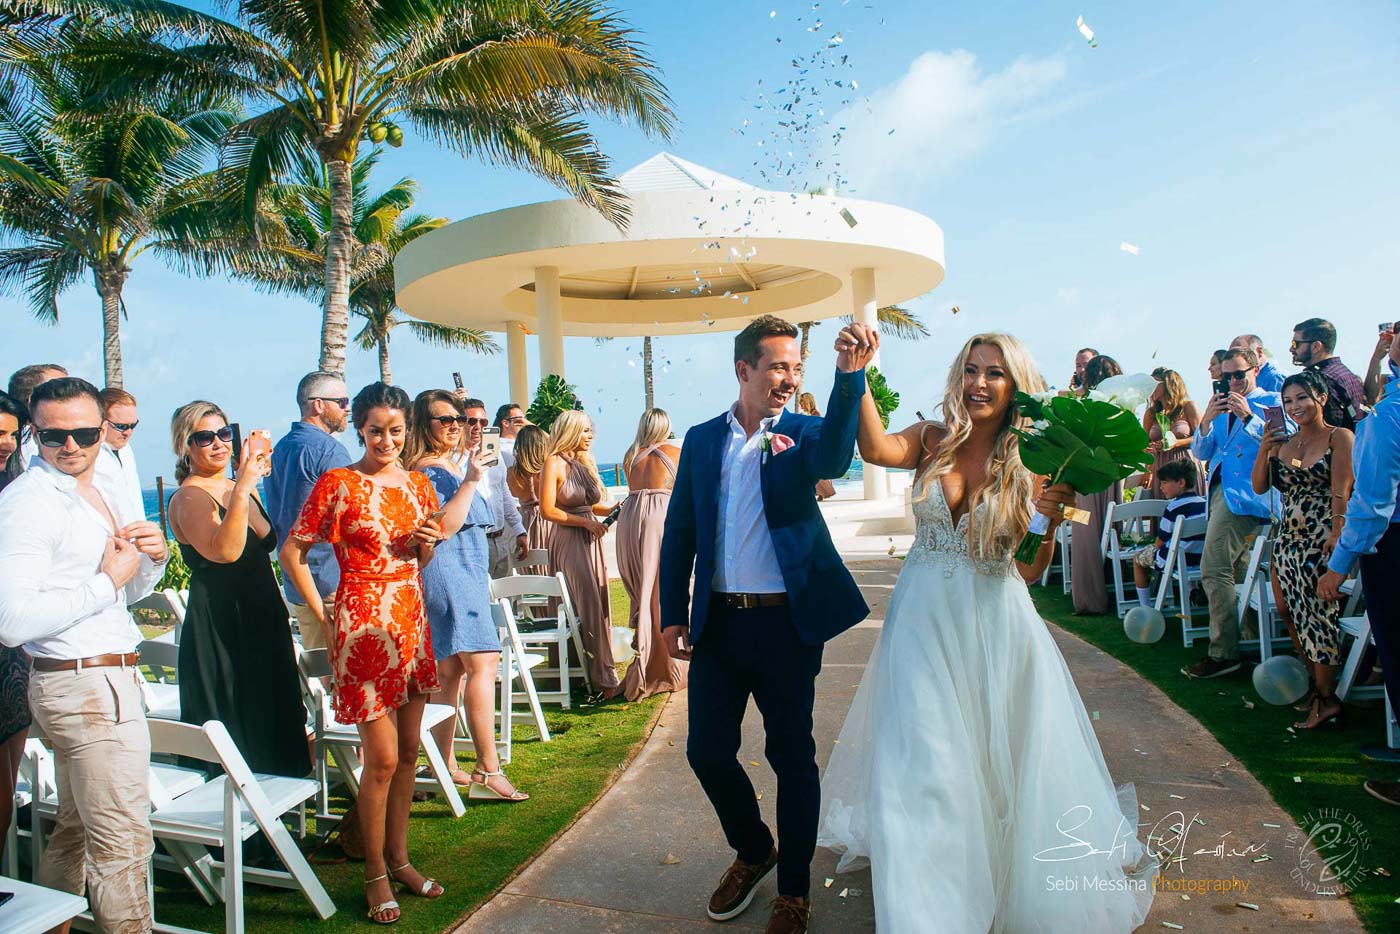 destination wedding in Cancun Mexico – Sebi Messina Photography